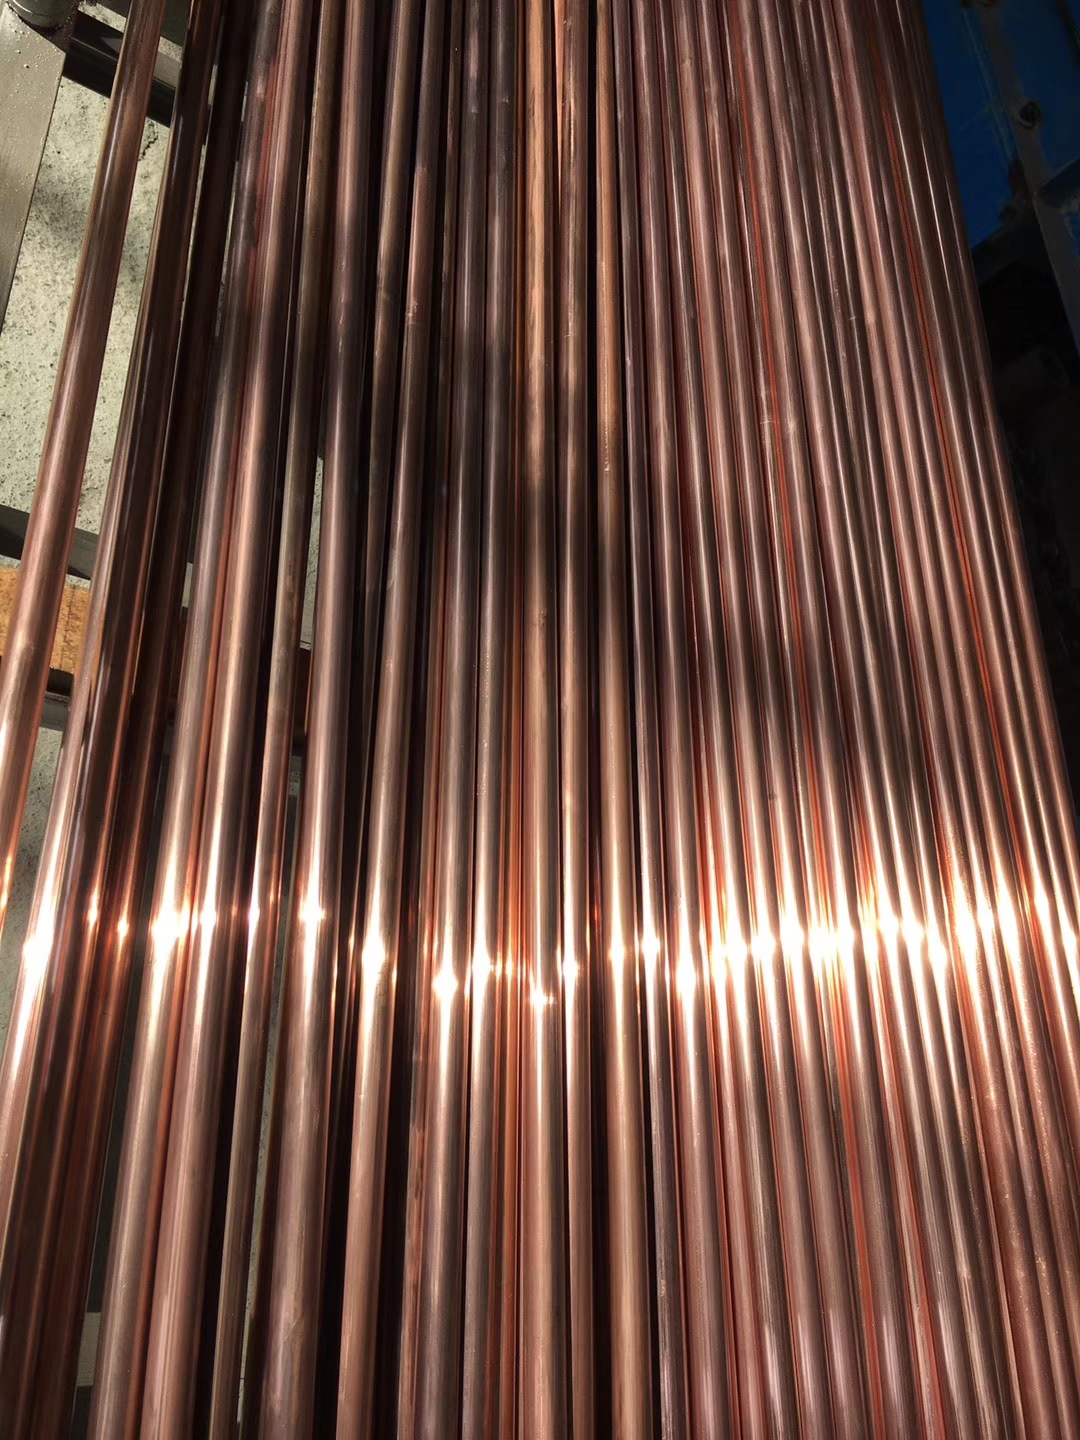 100% Original Stainless Steel Elbow Fitting - Tellurium Copper Rod/ Bar C14500 / CDA C145/ CuTeP / CW118C Tellurium copper (C14500,CuTeP) – Cepheus